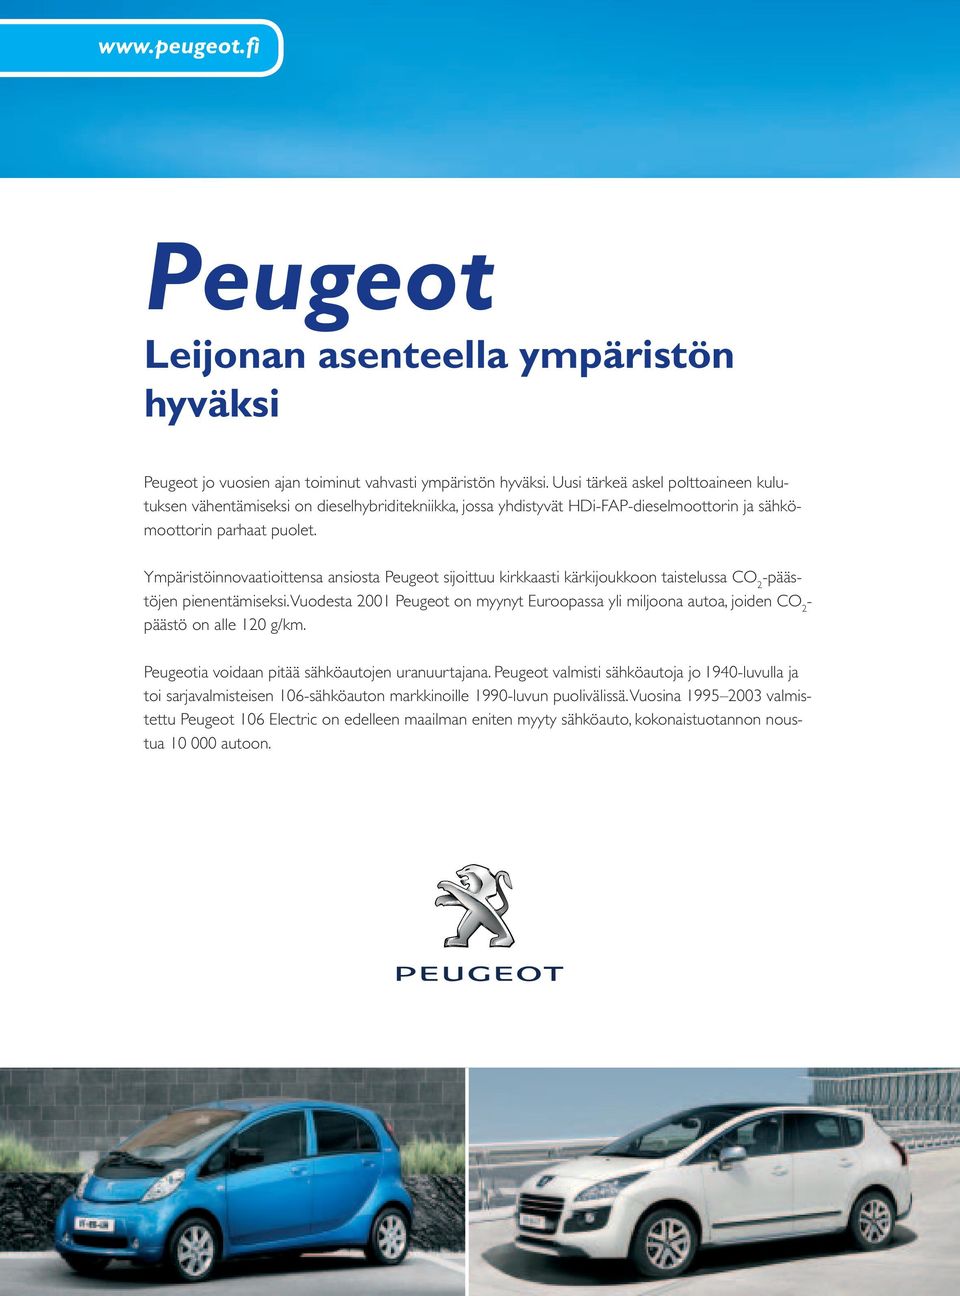 Ympäristöinnovaatioittensa ansiosta Peugeot sijoittuu kirkkaasti kärkijoukkoon taistelussa CO 2 -päästöjen pienentämiseksi.